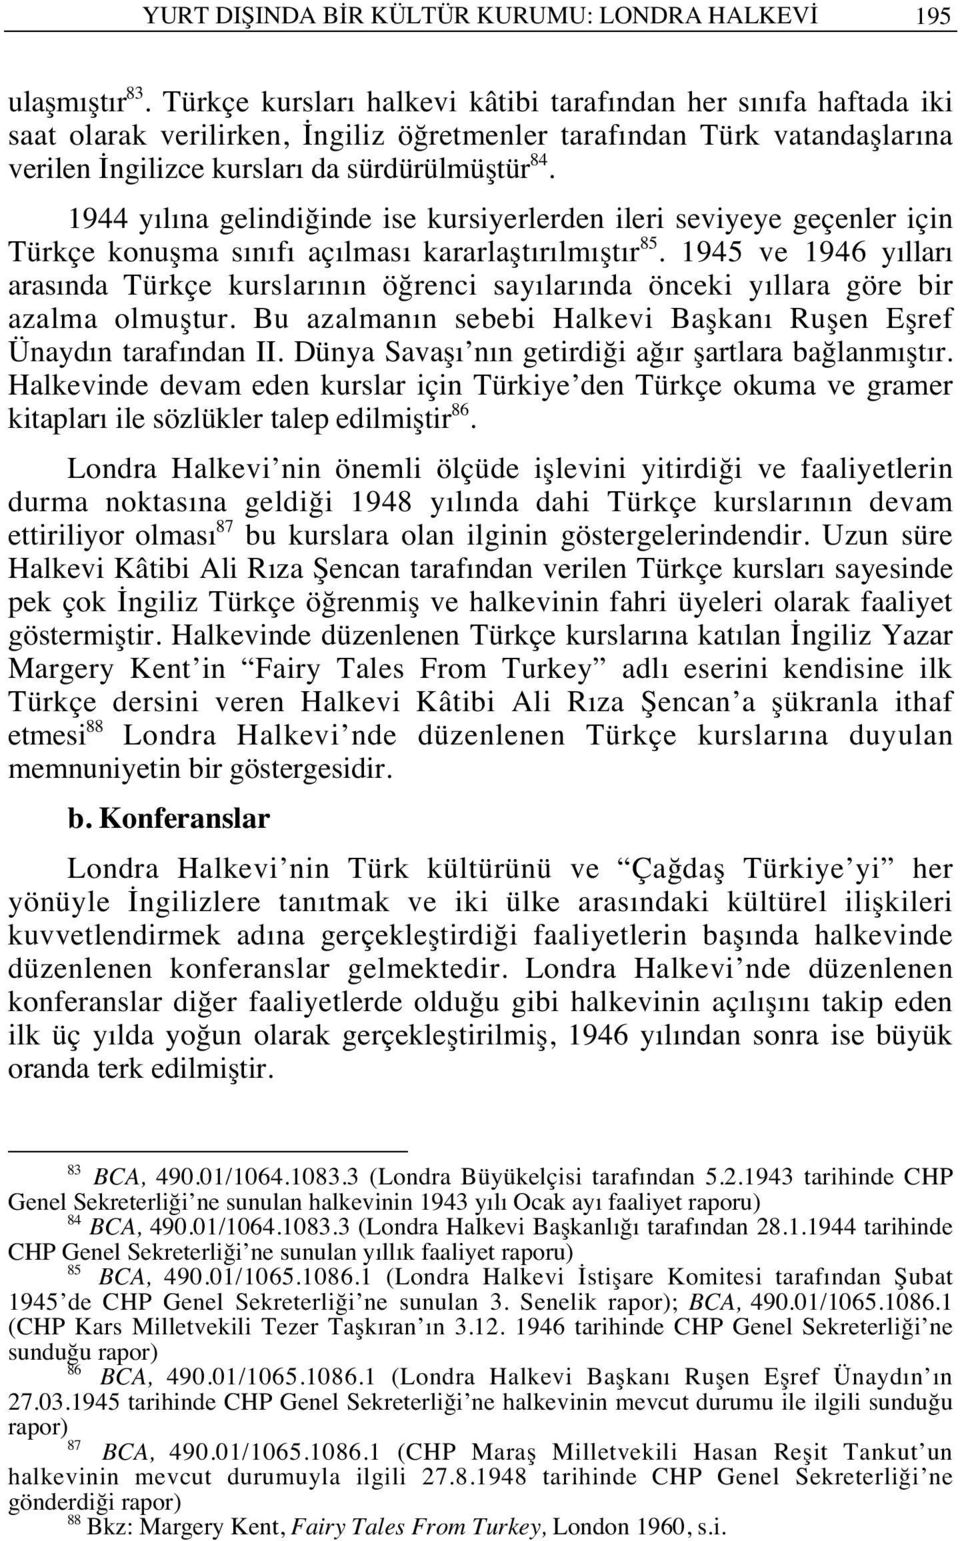 1944 y l na gelindiğinde ise kursiyerlerden ileri seviyeye geçenler için Türkçe konuşma s n f aç lmas kararlaşt r lm şt r 85.